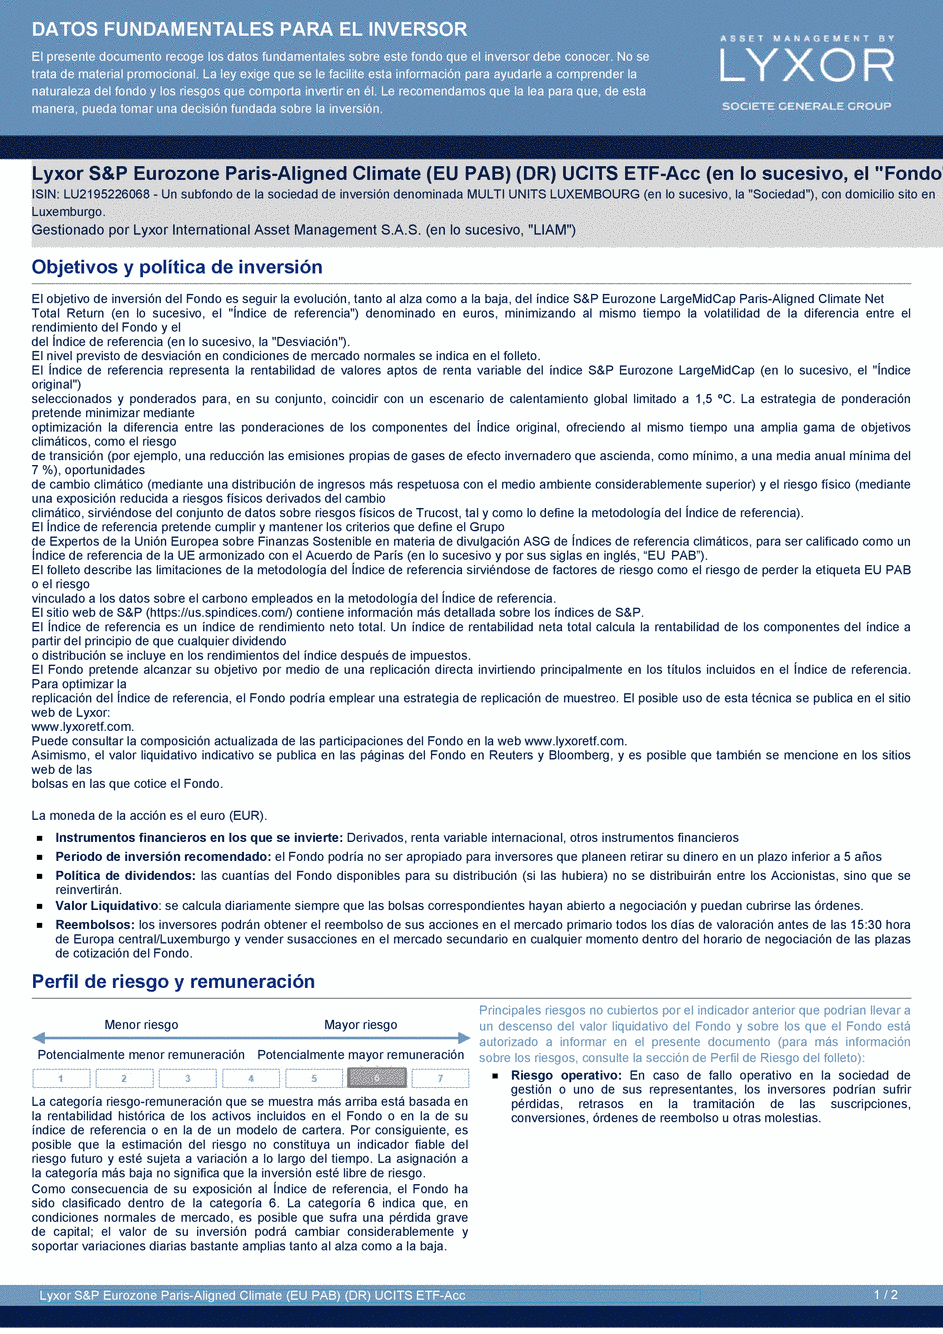 DICI Lyxor S&P Eurozone Paris-Aligned Climate (EU PAB) (DR) UCITS ETF - Acc - 22/06/2020 - Espagnol